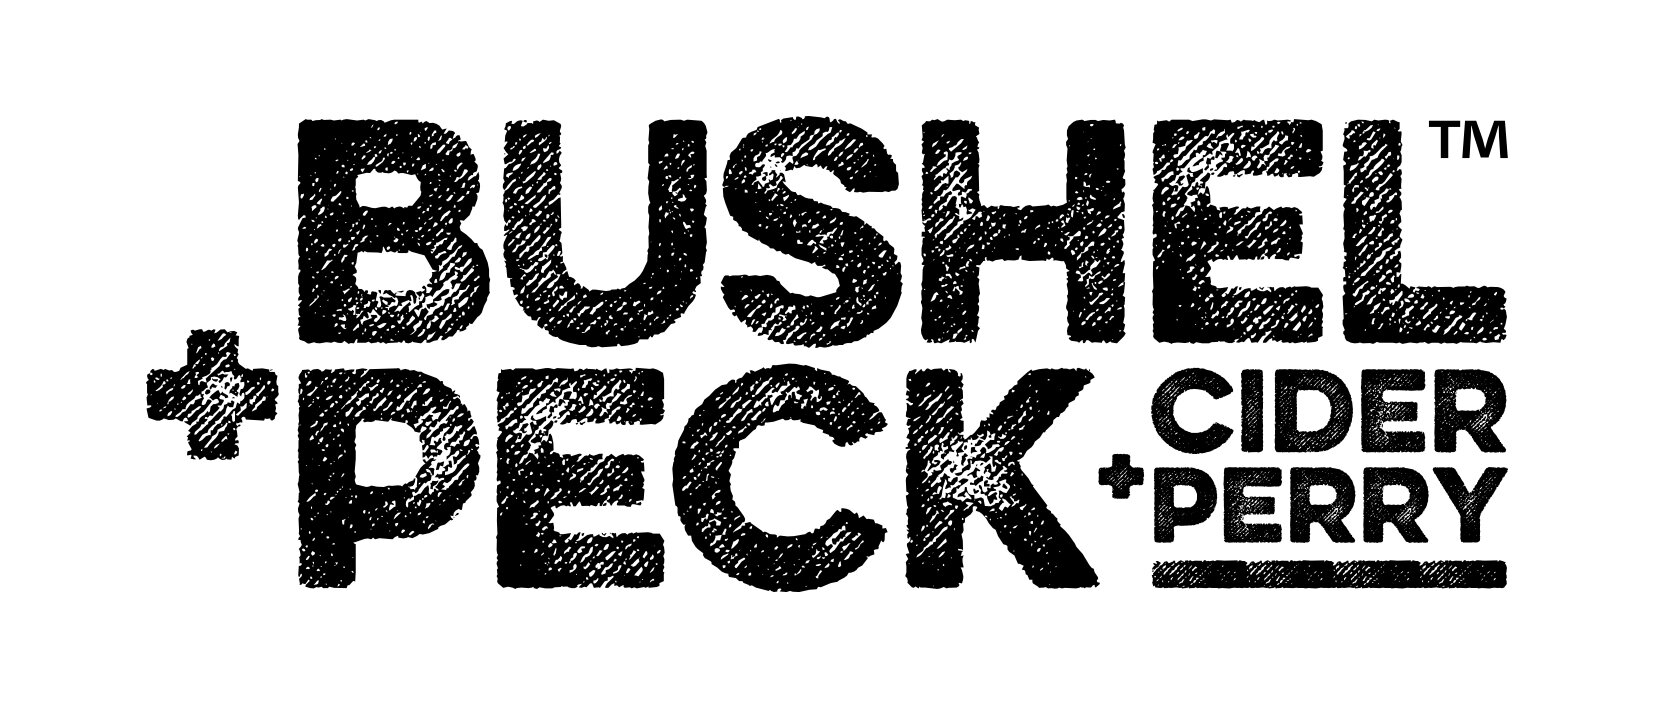 BushelPeck MASTER logo.jpg